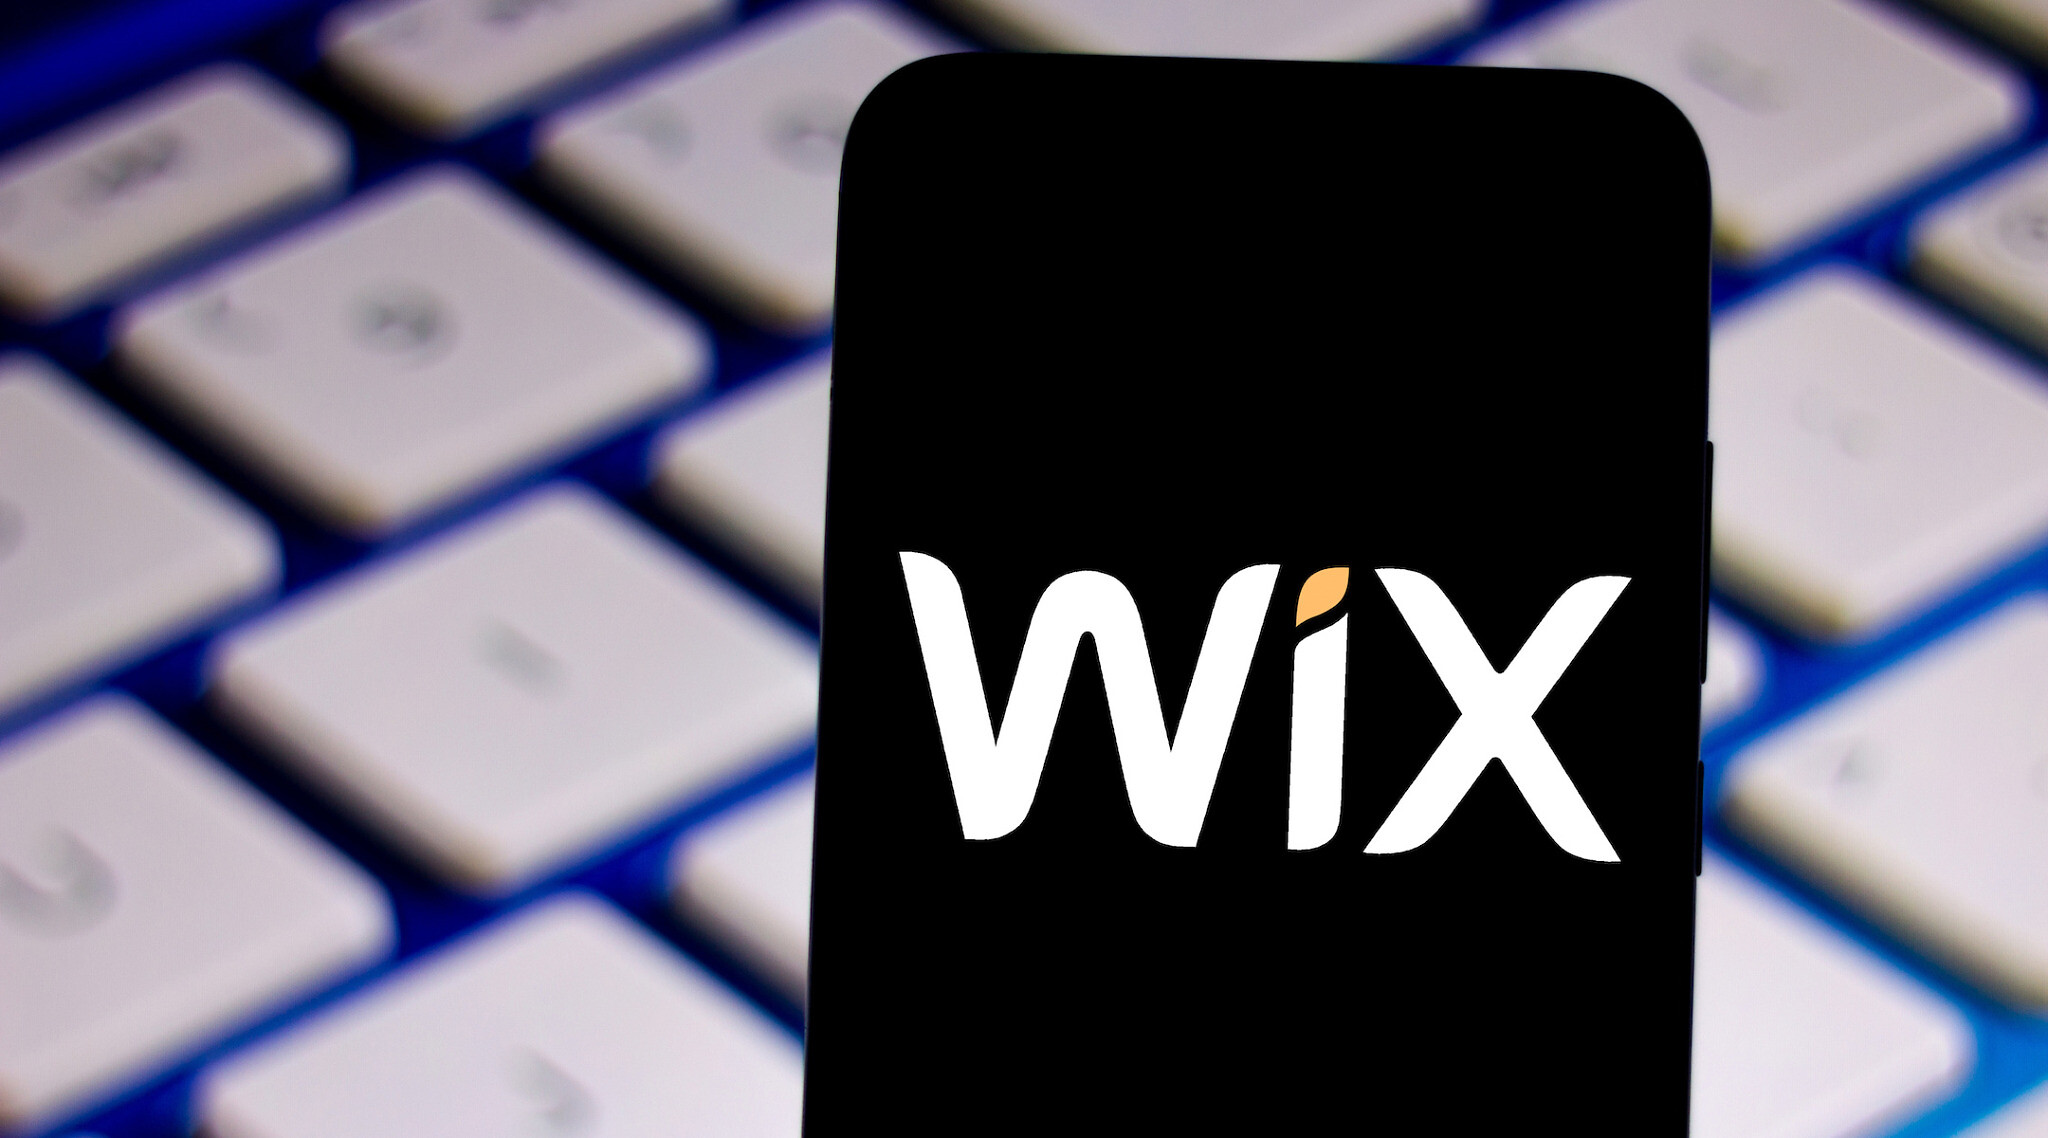 Nuvei и Wix объединяются для обработки платежей. Wall Street говорит: покупай акции